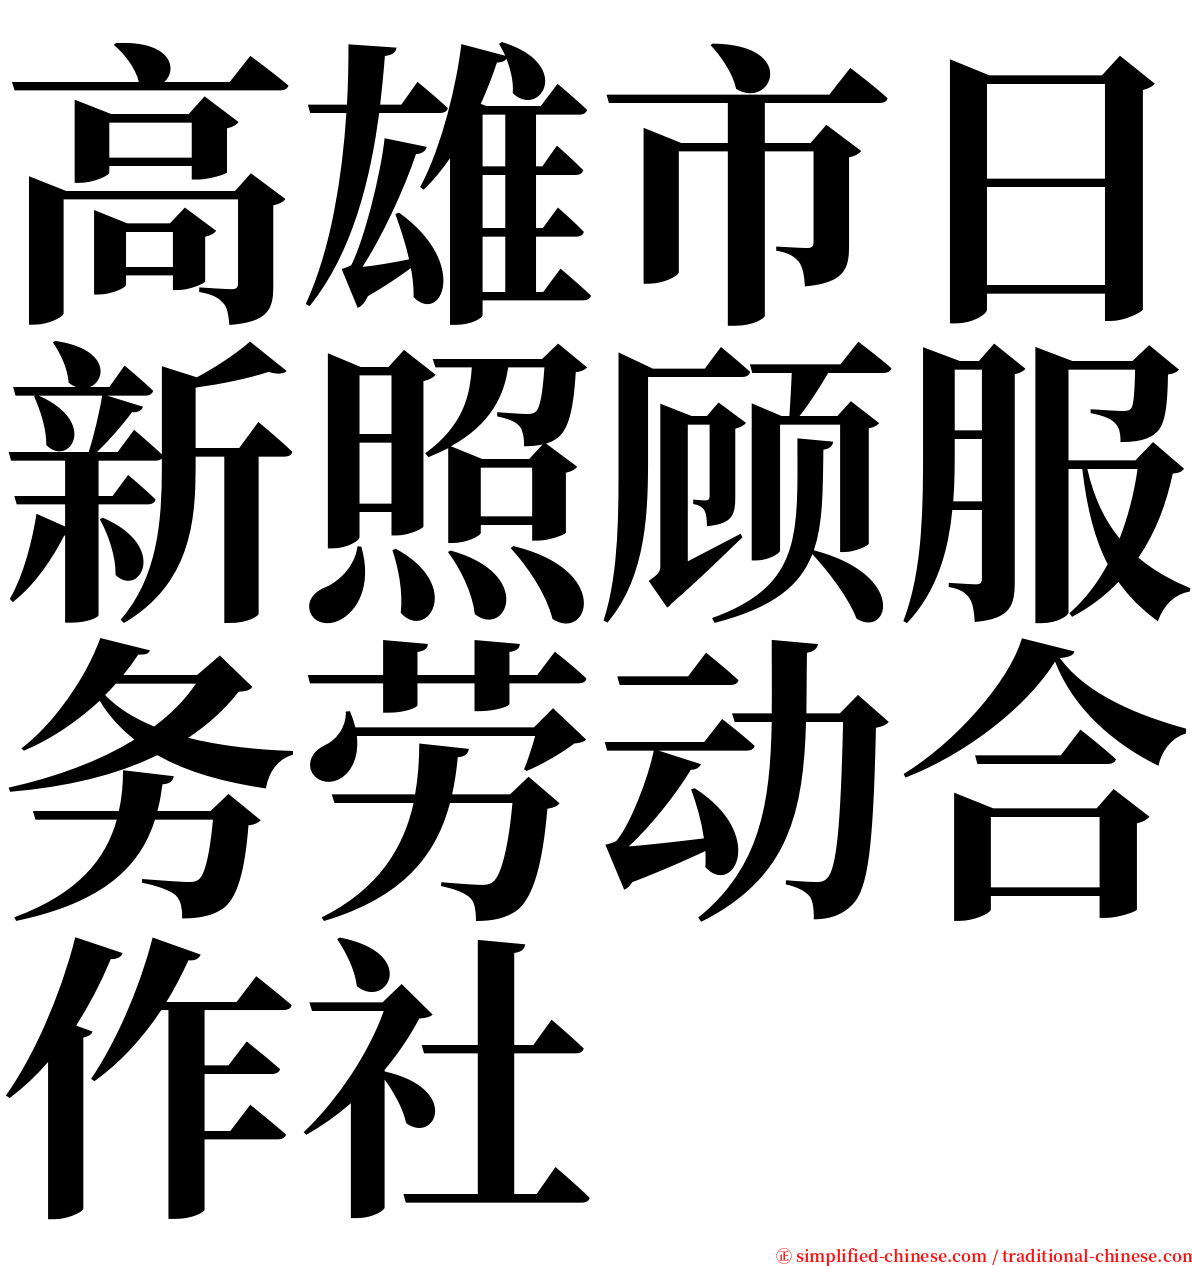 高雄市日新照顾服务劳动合作社 serif font